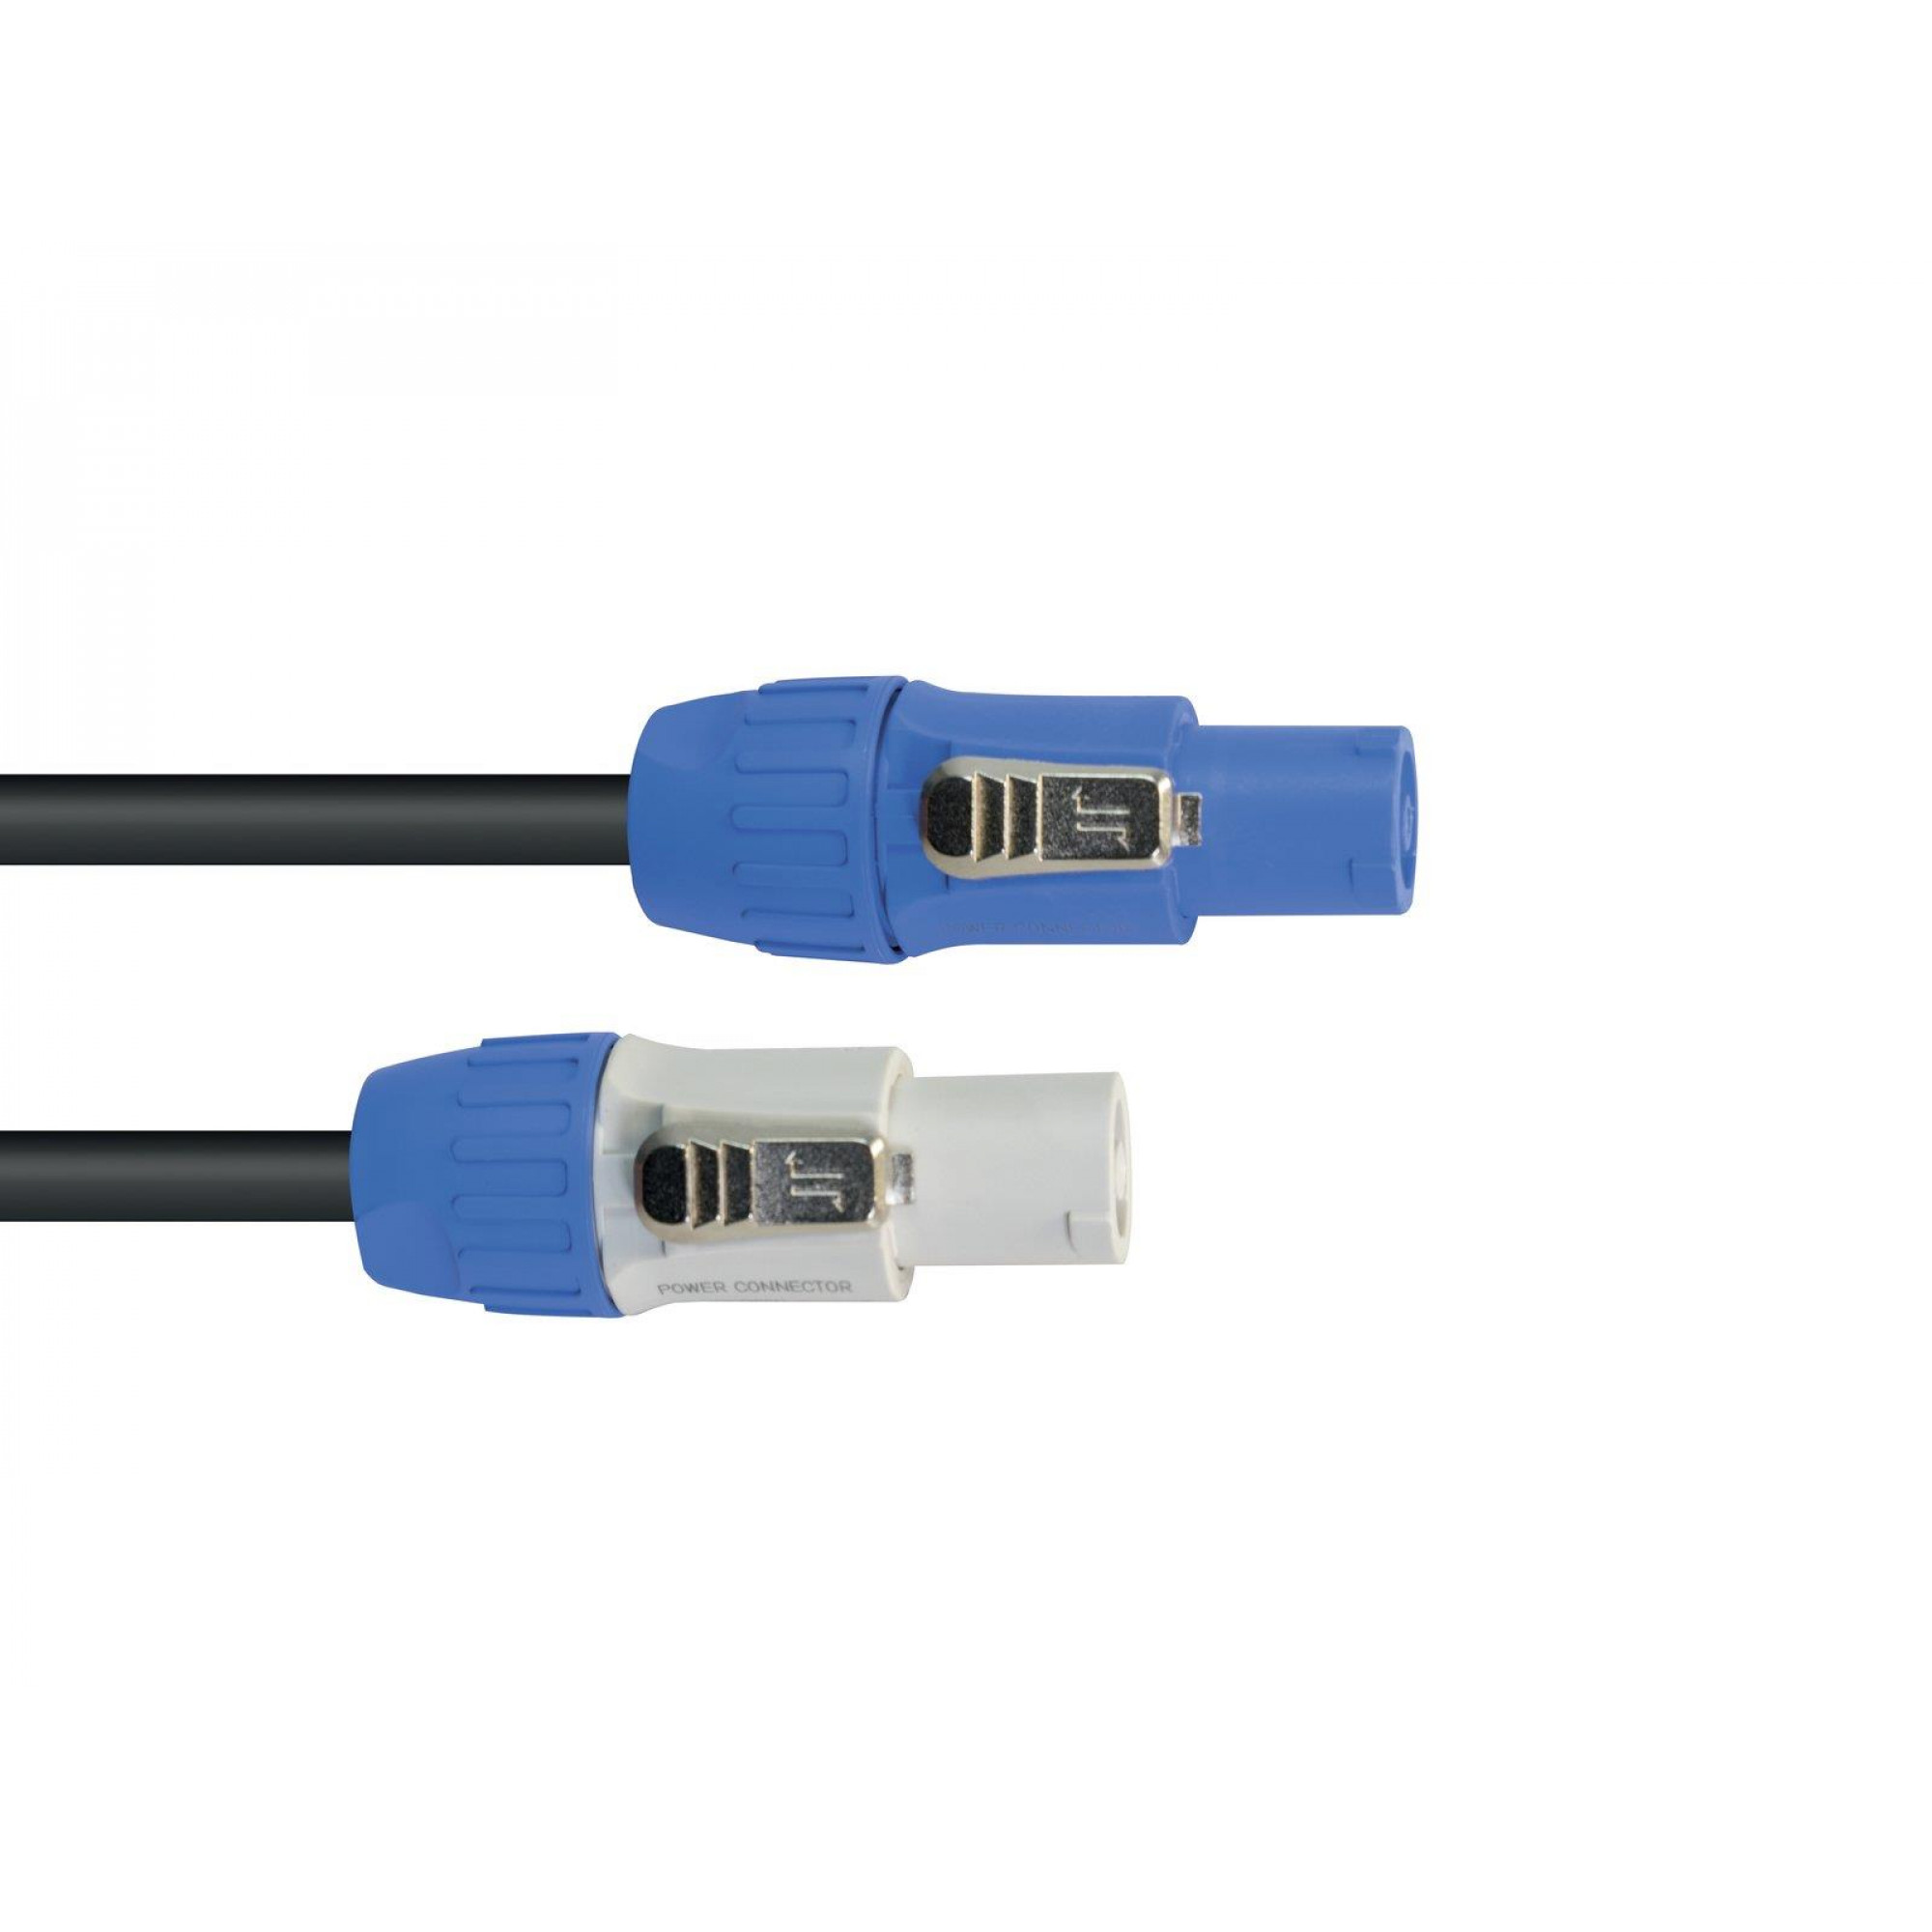 EUROLITE P-Con Connection Cable 3x1.5 1,5m